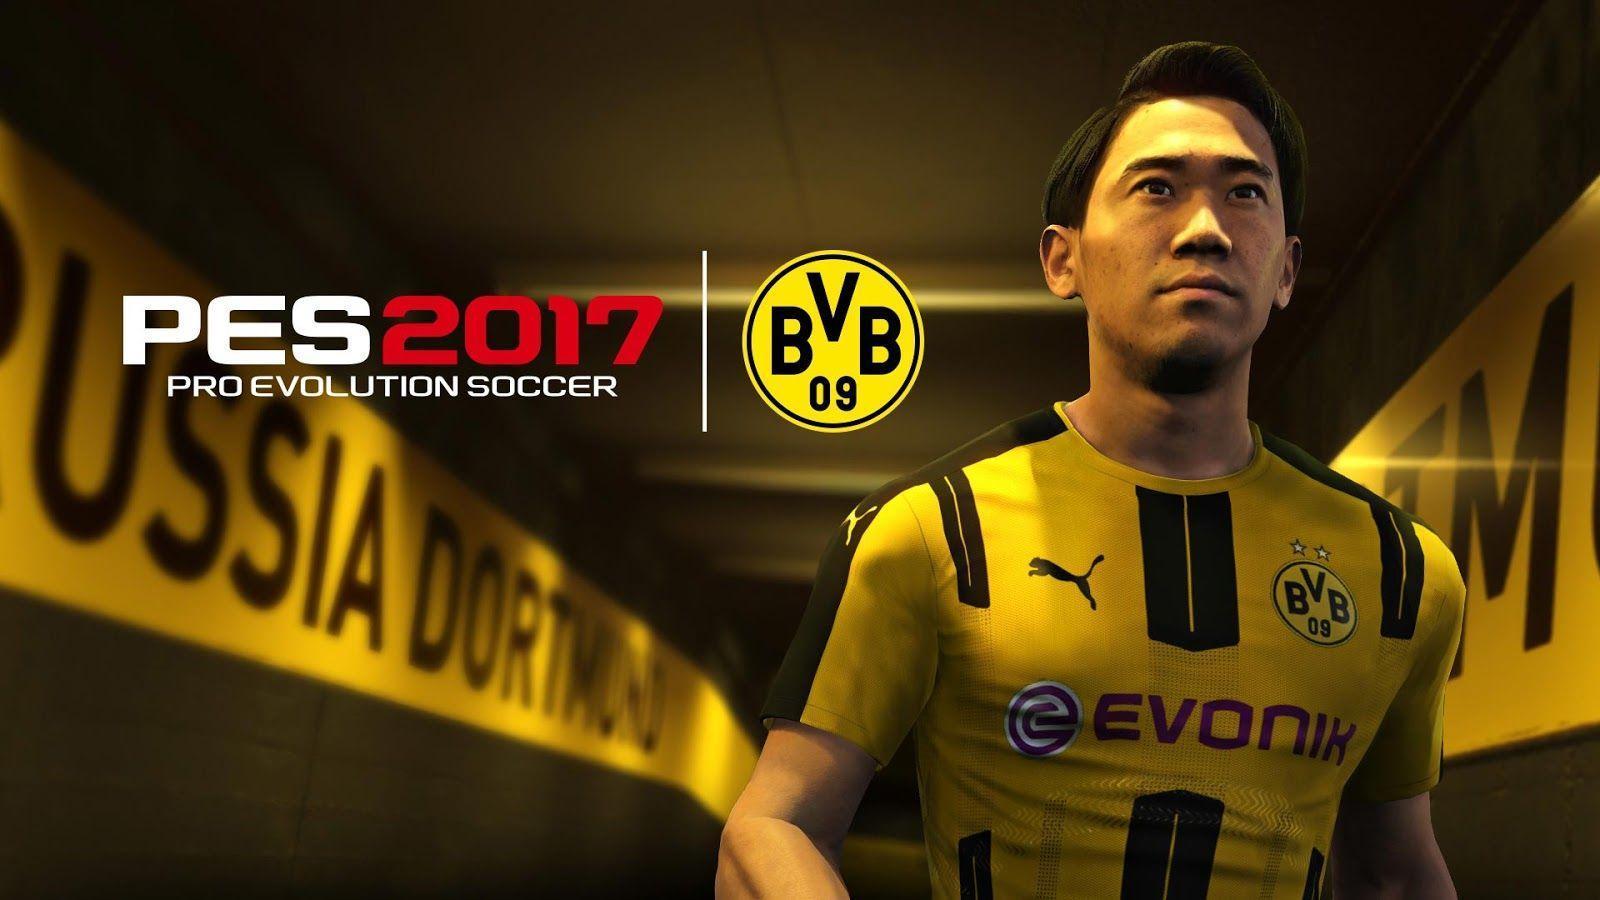 PES 2017 Gamescom + Dortmund License + Demo Date Announced